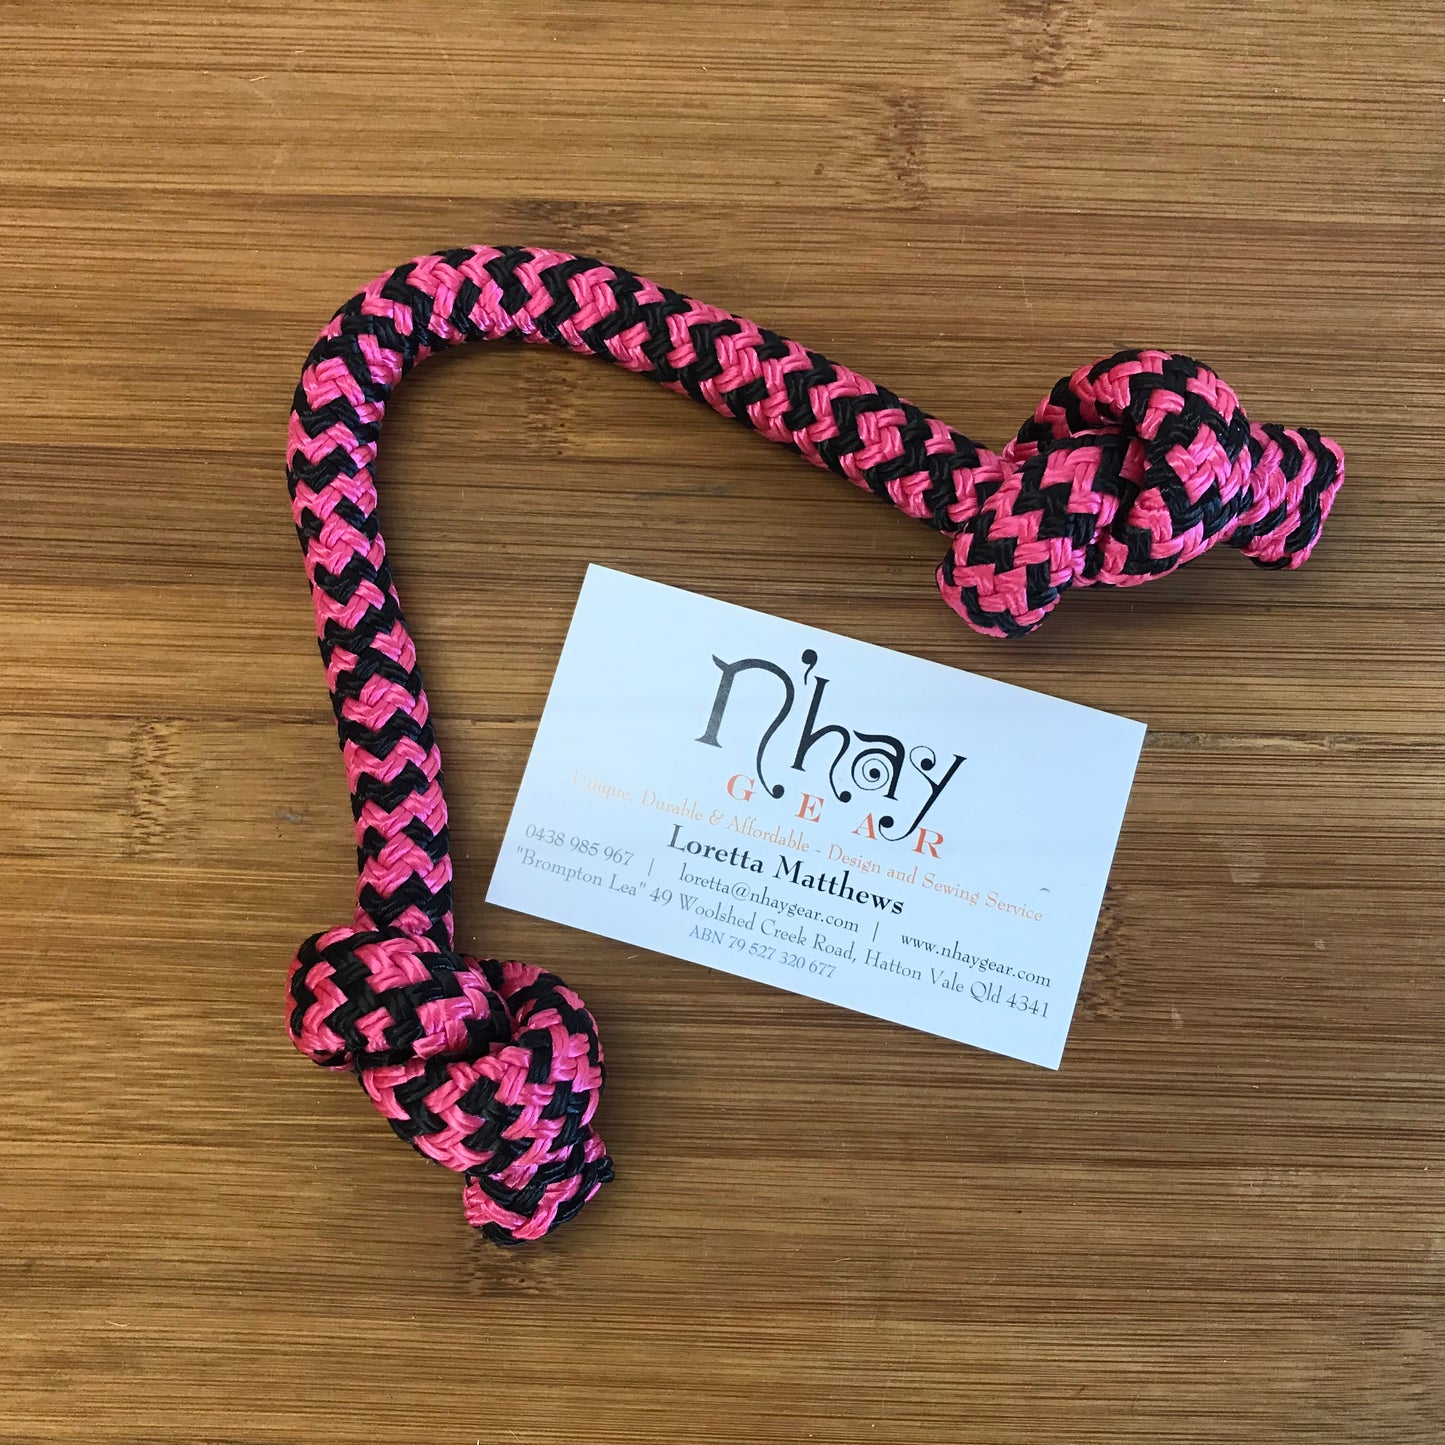 N’hay Gear - Doggy Battle Rope